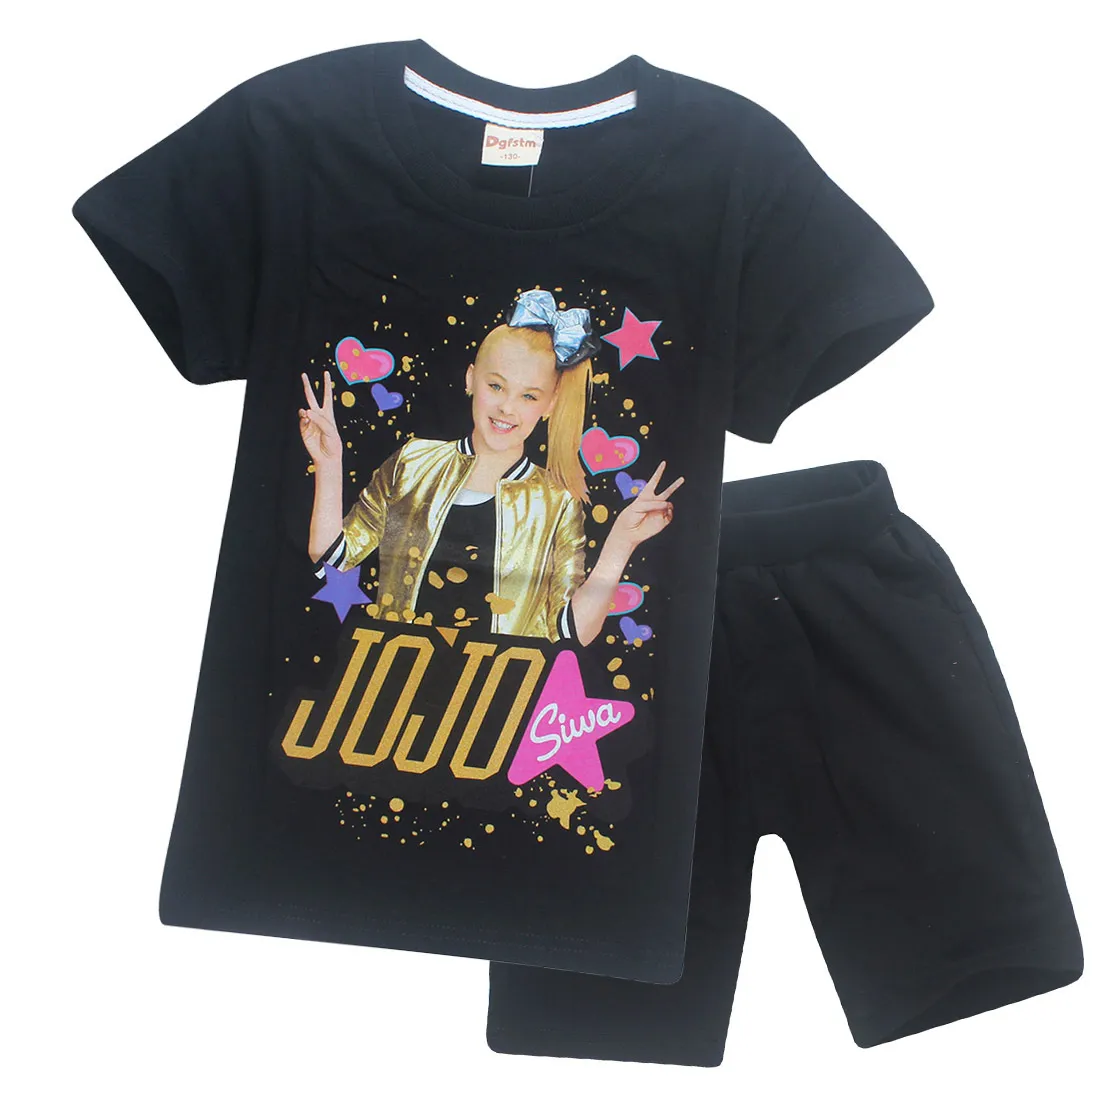 Jojo Siwa Kinder Shorts Outfits 2018 Neue Cartoon Kurzen Ärmeln Jojo Inspiriert Kinder Kleidung Sets Mode Sommer Mädchen Kleidung C3911